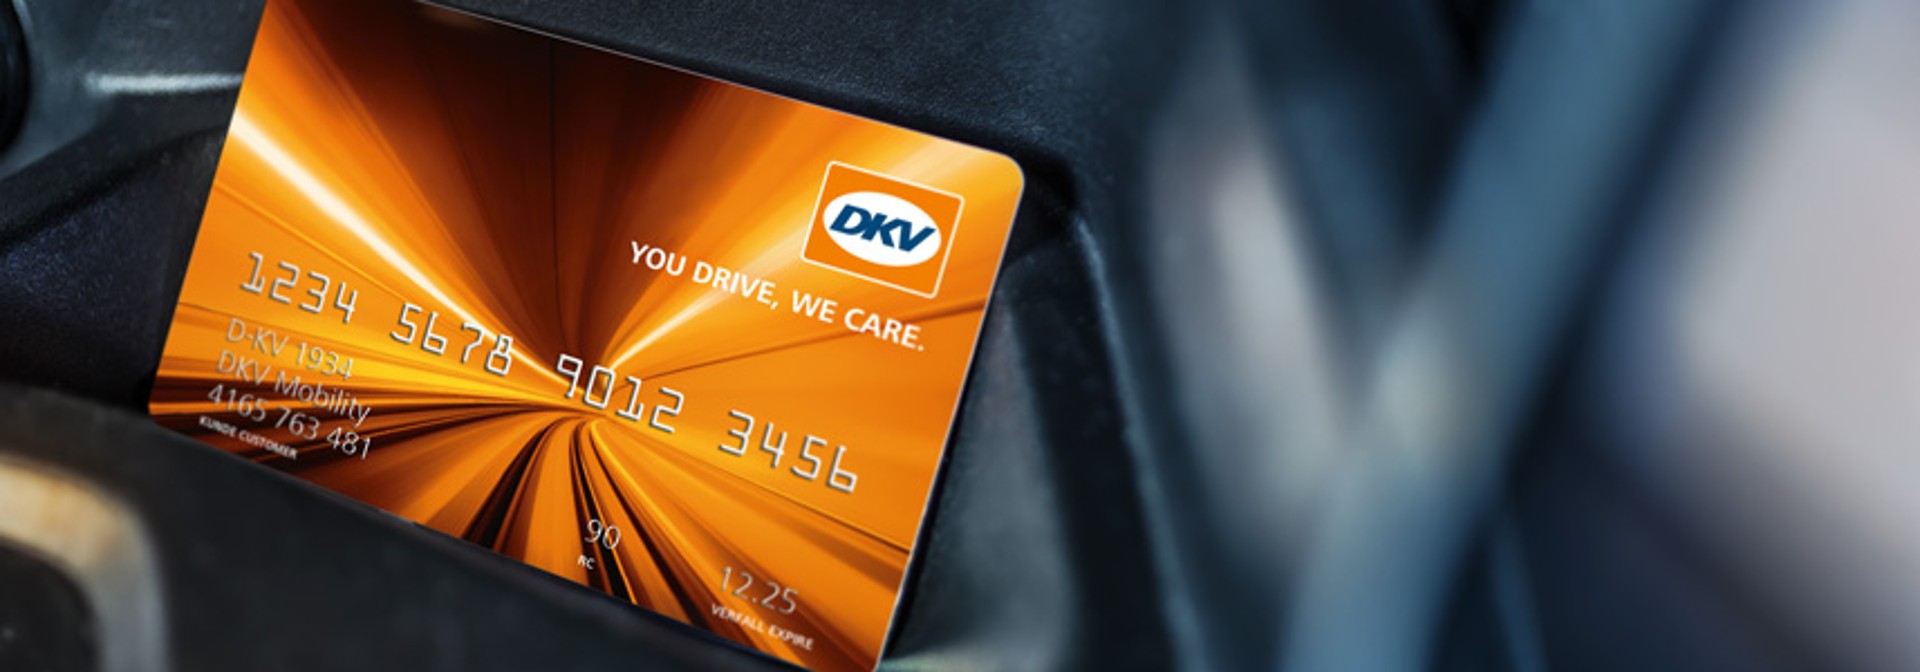 Lihtne maksmine DKV kaardiga